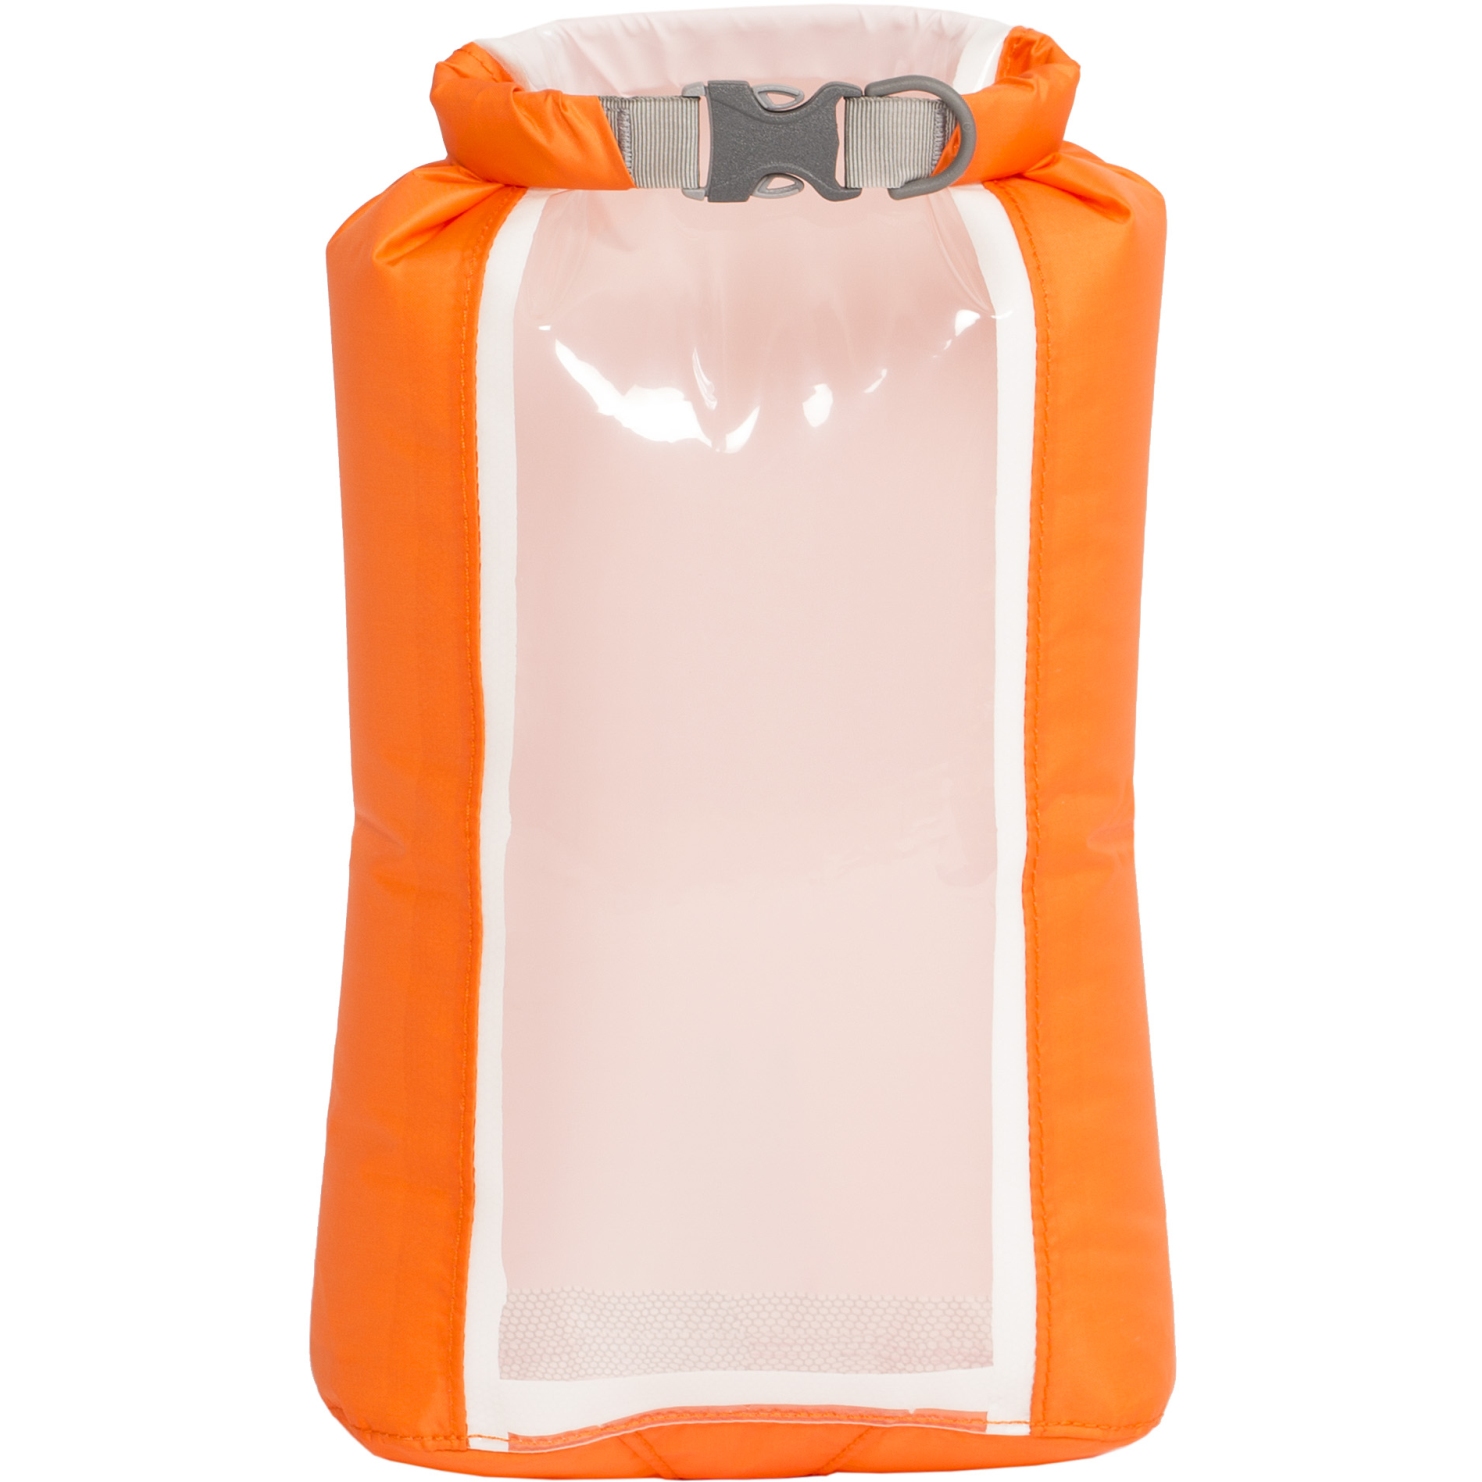 Immagine prodotto da Exped Sacca Stagna - Fold Drybag CS - XS - arancione